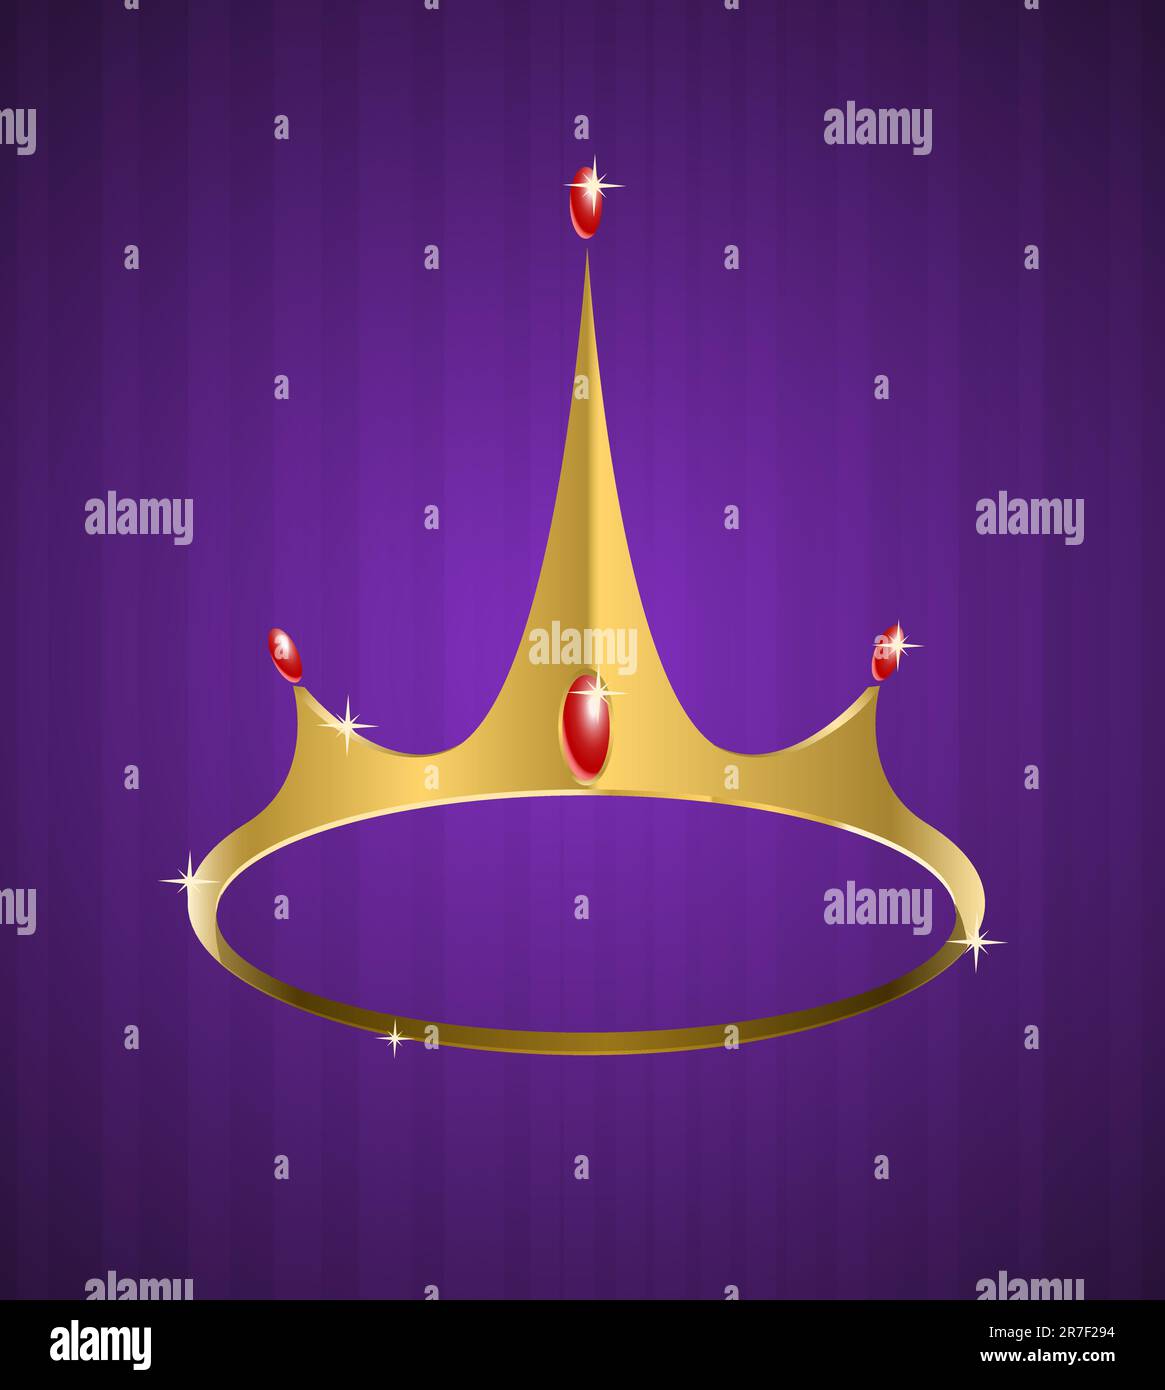 Corona vettoriale dorata con diamanti lucidi su sfondo viola Illustrazione Vettoriale